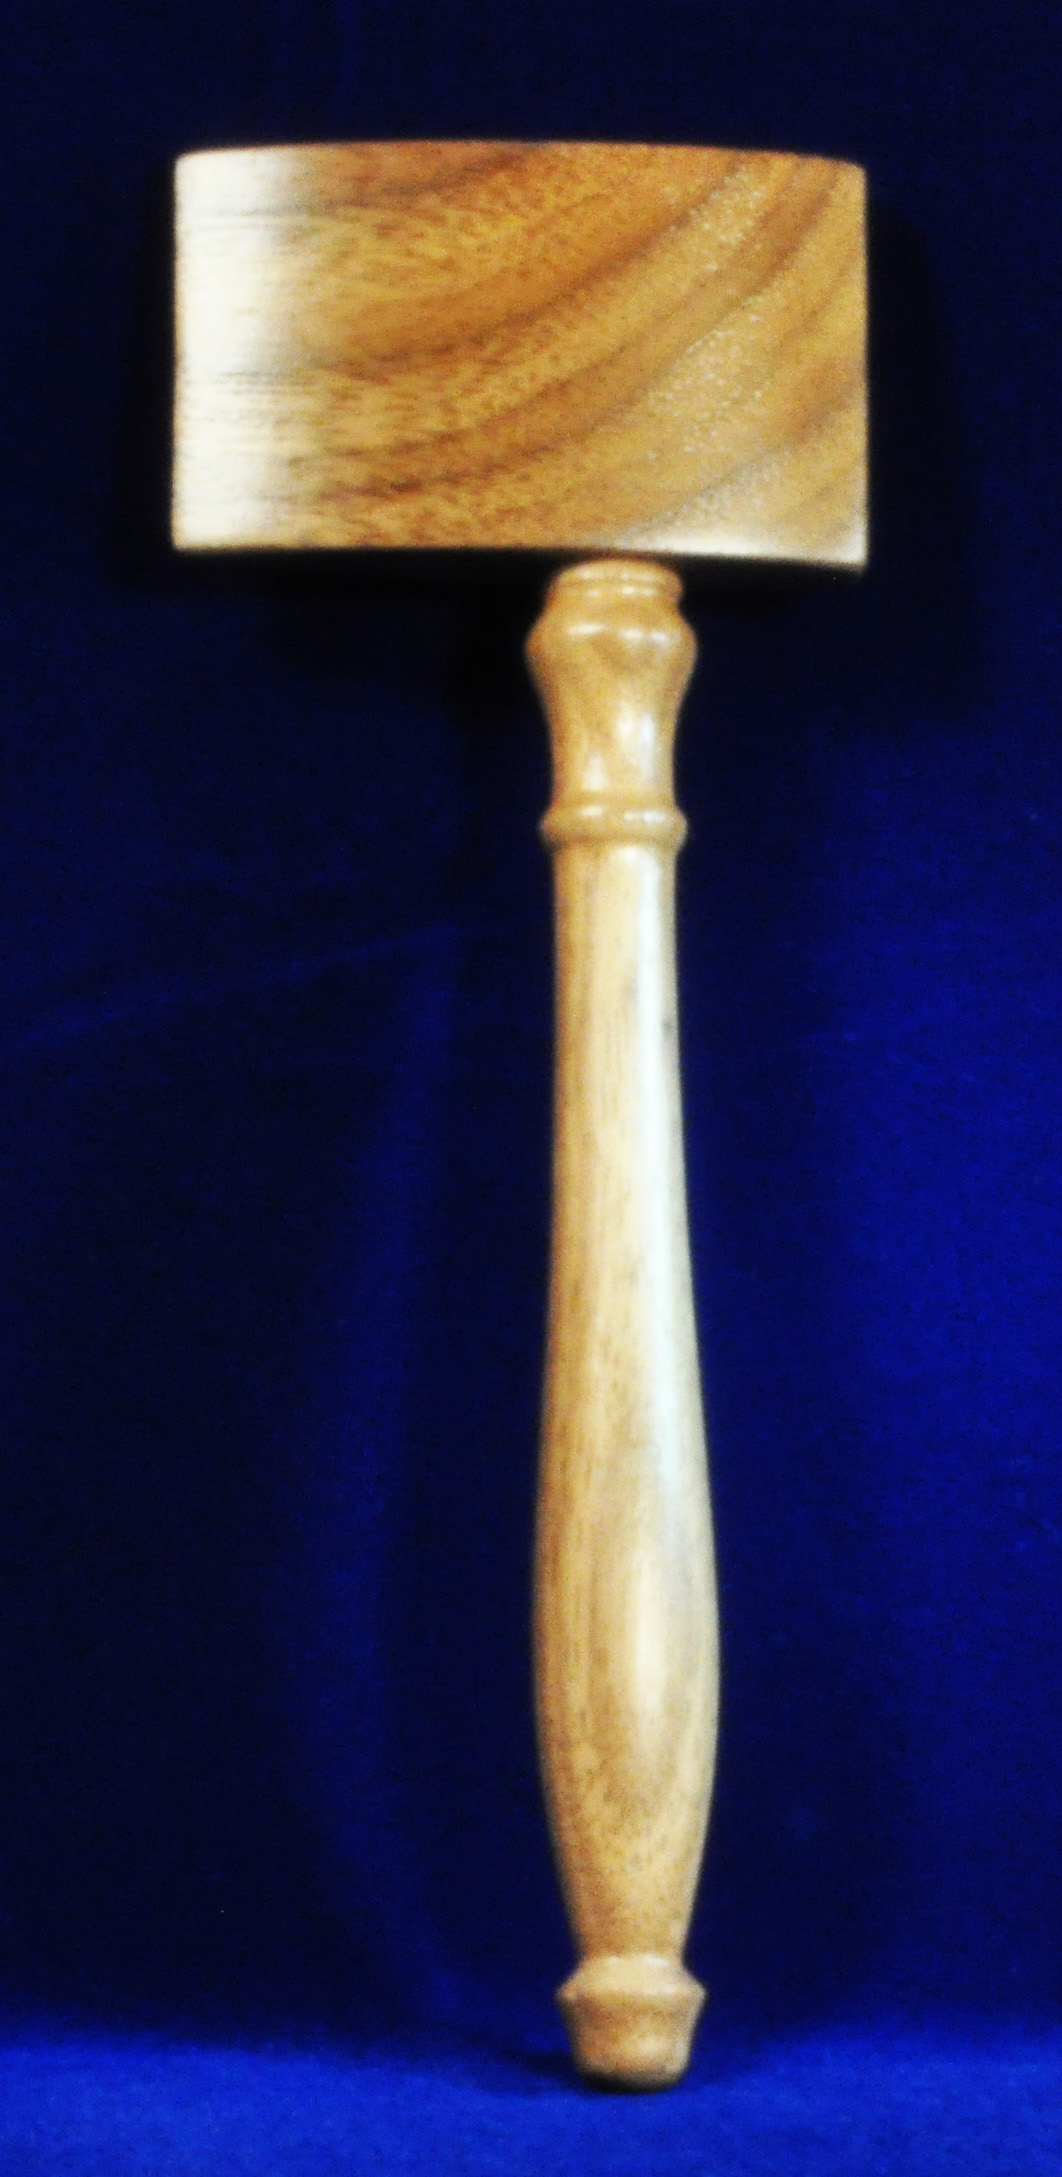 Masonic Working Tool Wood  - Hammer